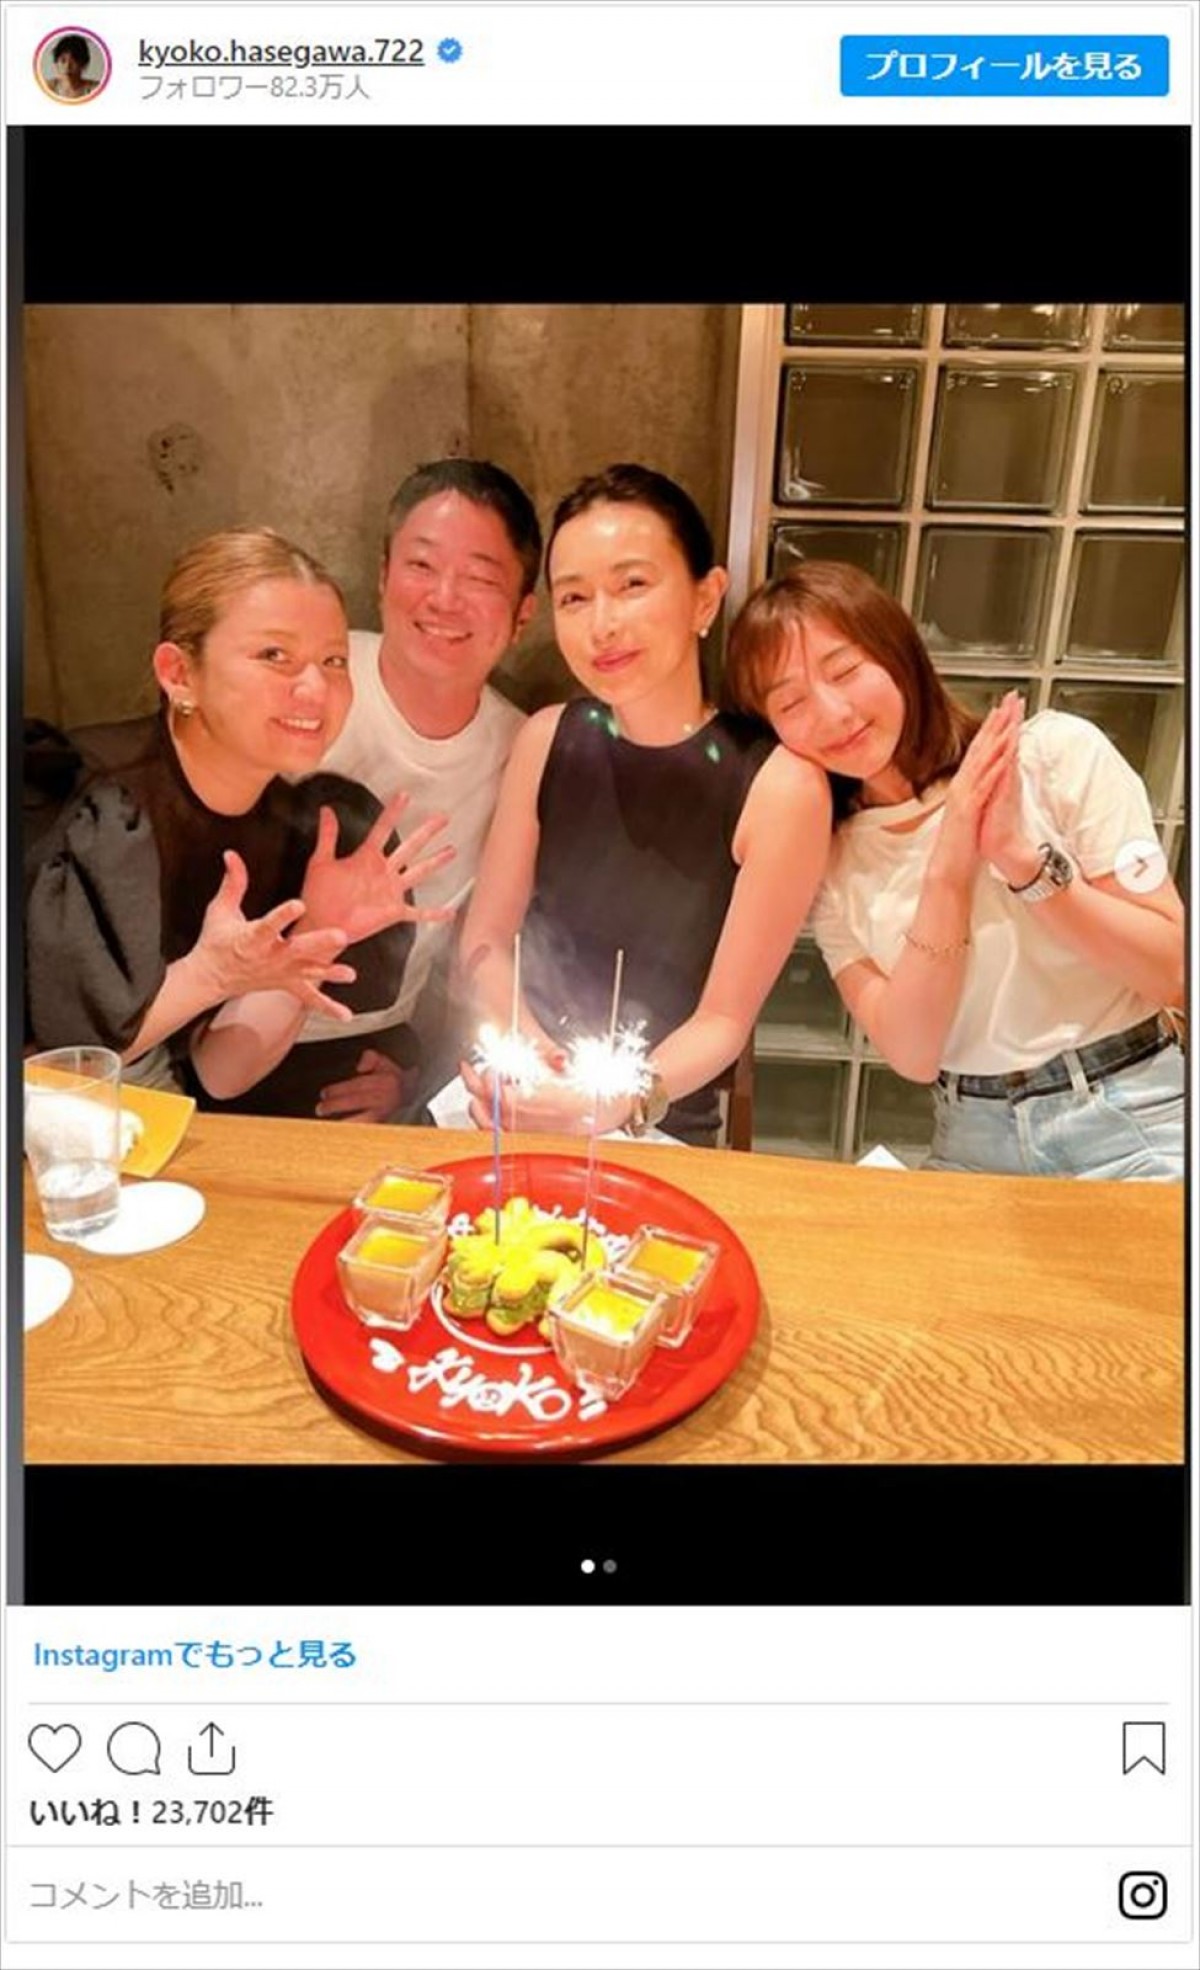 長谷川京子、44歳誕生日を田中みな実らがお祝い「物凄く笑い転げた夜でした」